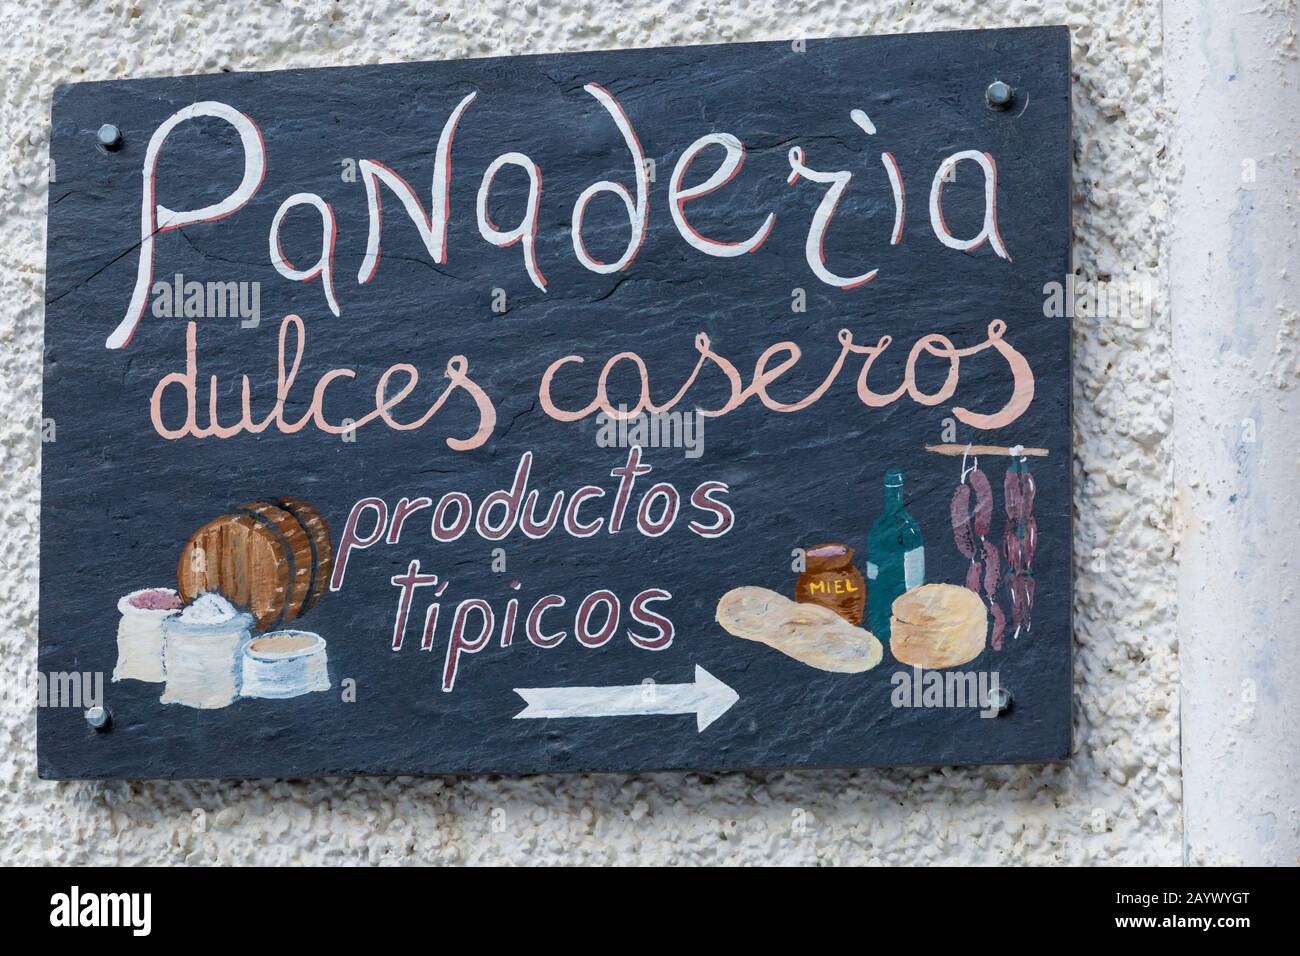 Panaderia dulces caseros segno a Pampaneira, Andalucia, Spagna in febbraio - panetteria dolce fatta in casa Foto Stock